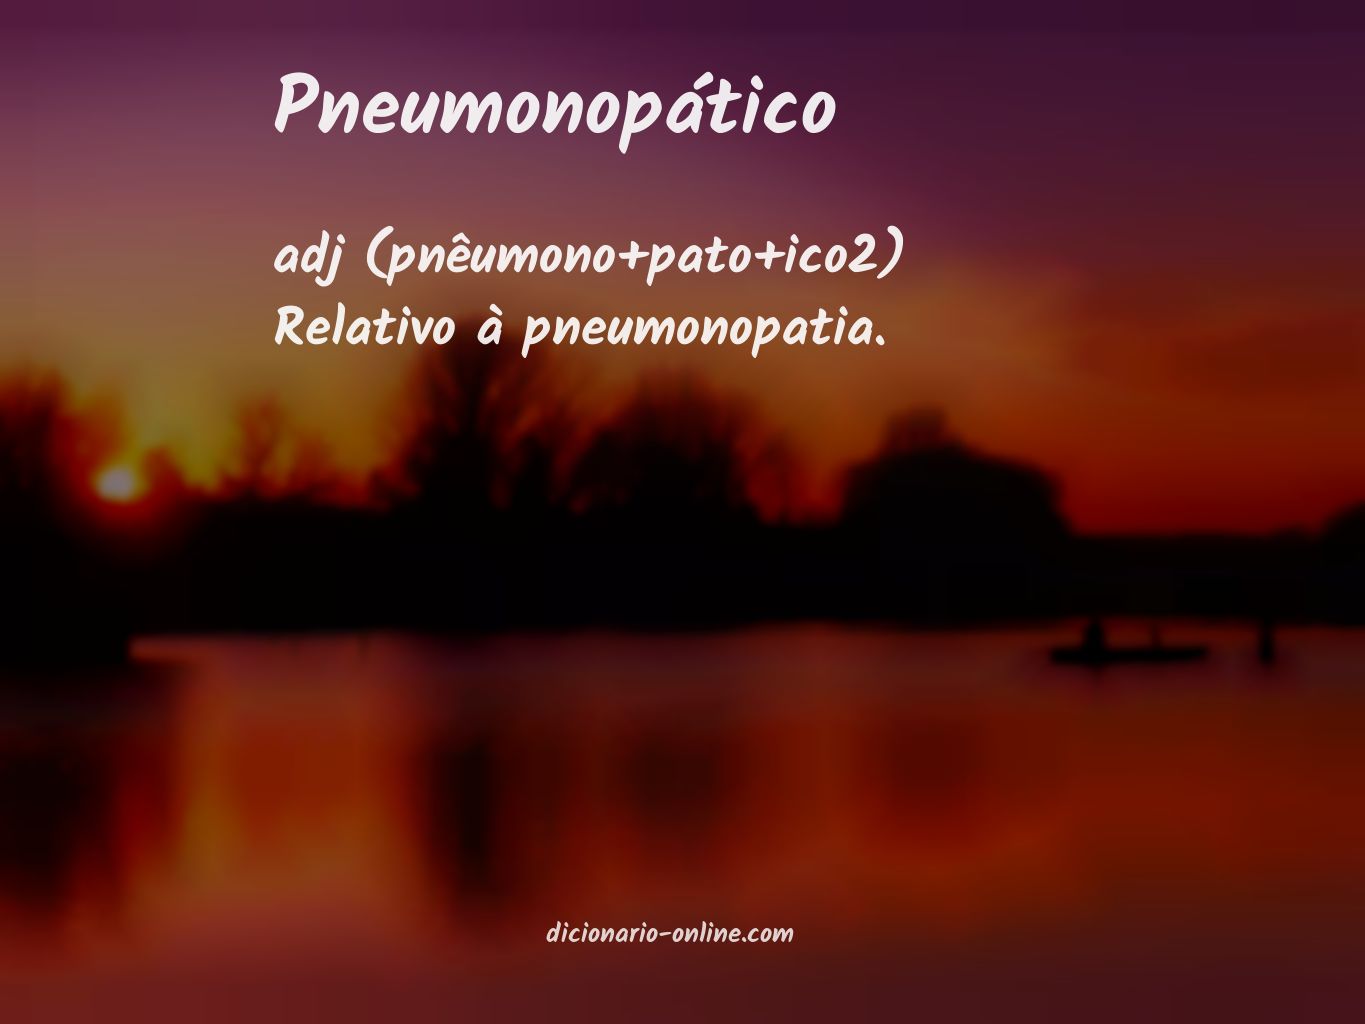 Significado de pneumonopático